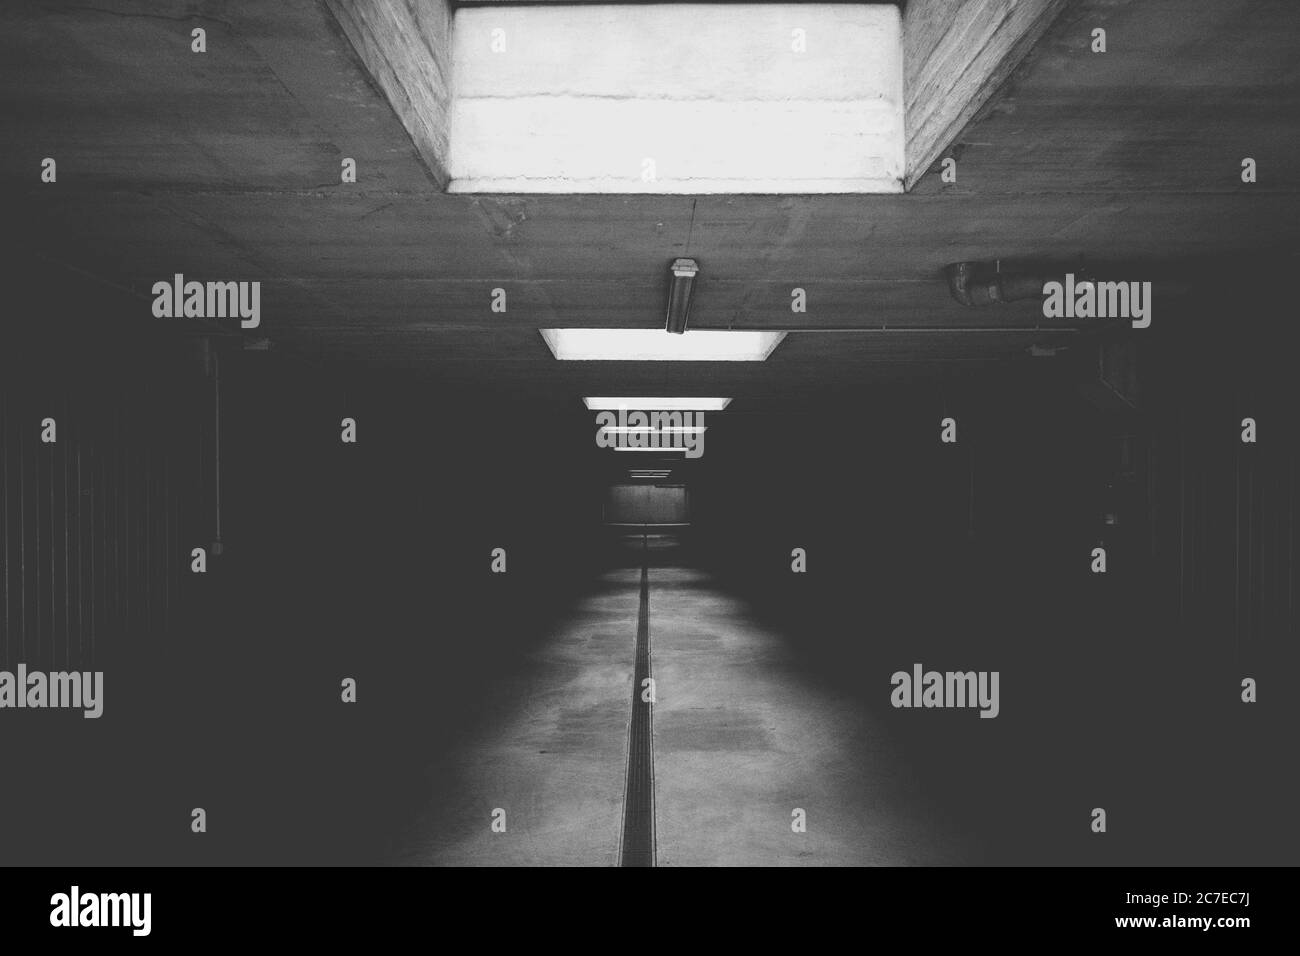 Immagine orizzontale in scala di grigi di un'area sotterranea, ideale per uno sfondo monocromatico Foto Stock